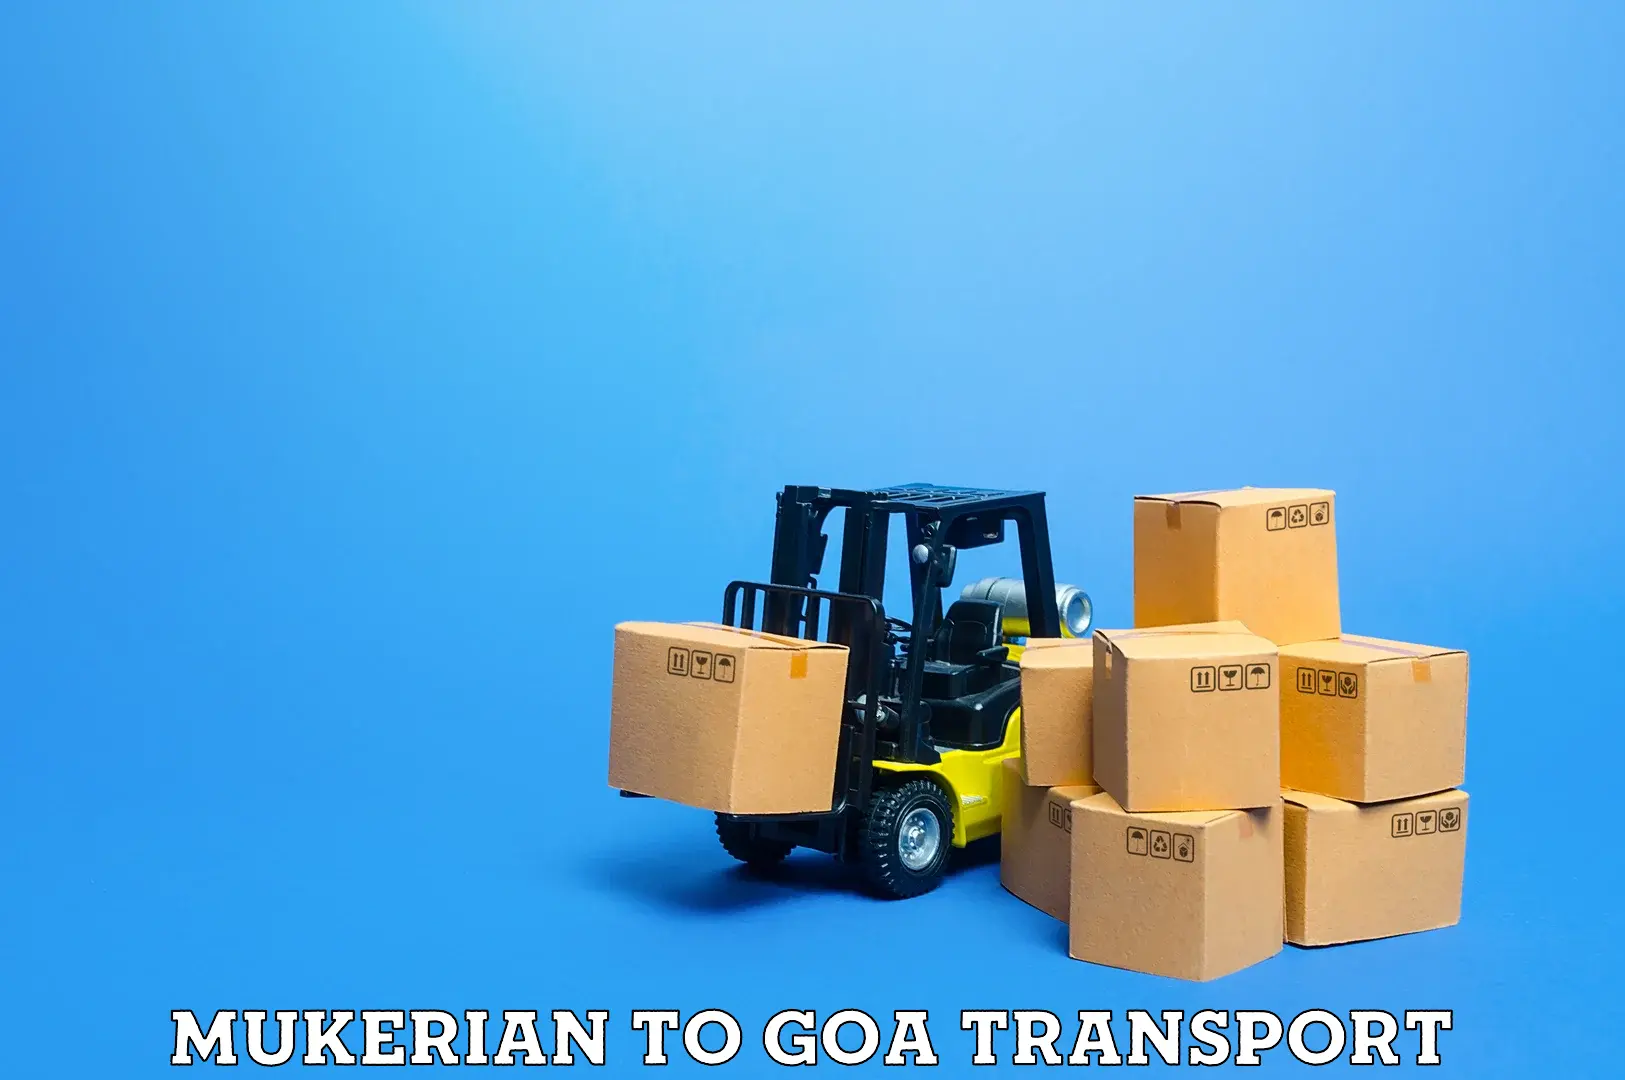 Daily parcel service transport Mukerian to Mormugao Port